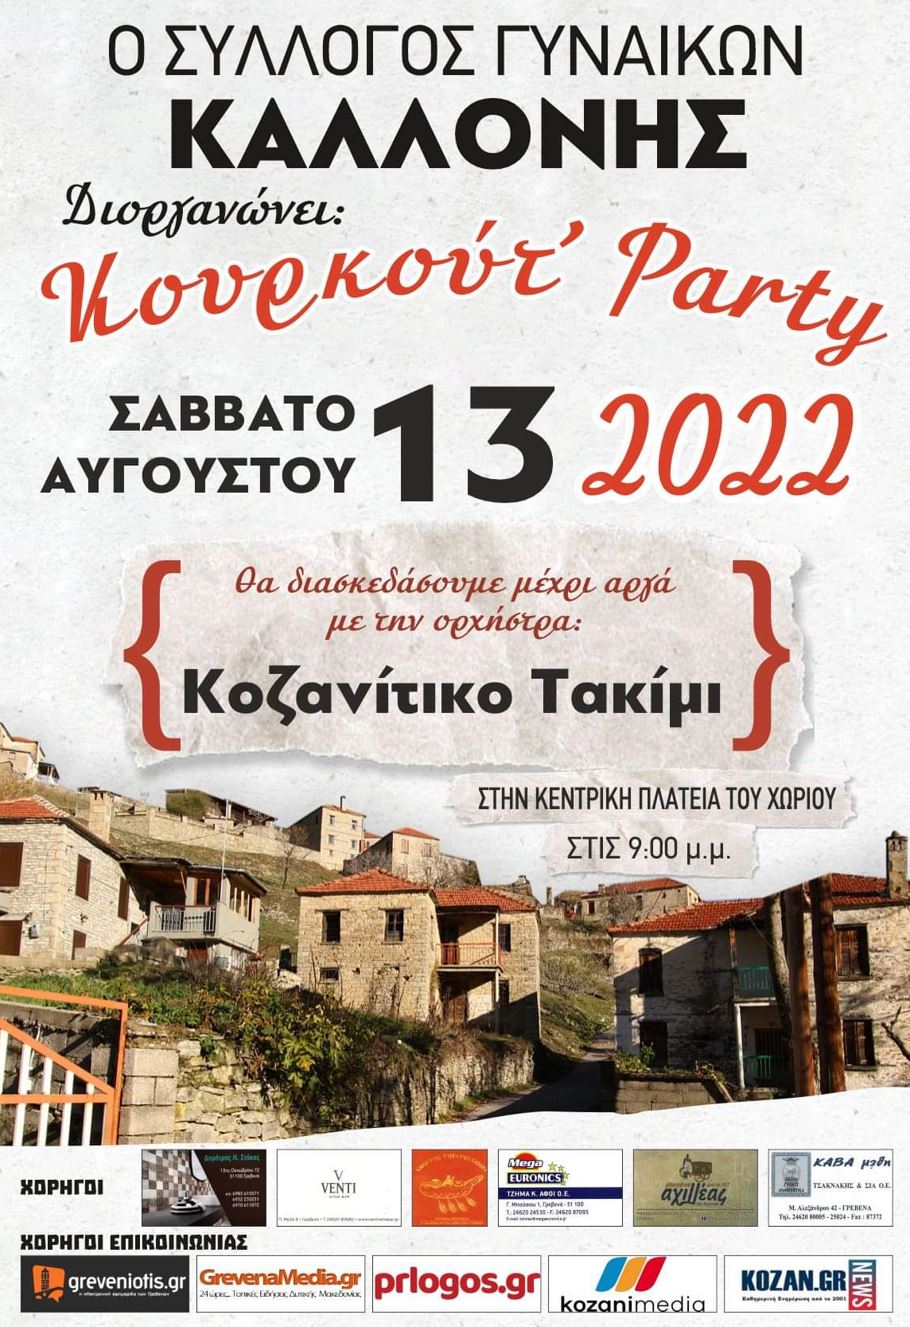 Ο Σύλλογος Γυναικών Καλλονής διοργανώνει “Κουρκούτ’ Party”, με την ορχήστρα Κοζανίτικό Τακίμι, το Σάββατο 13 Αυγούστου